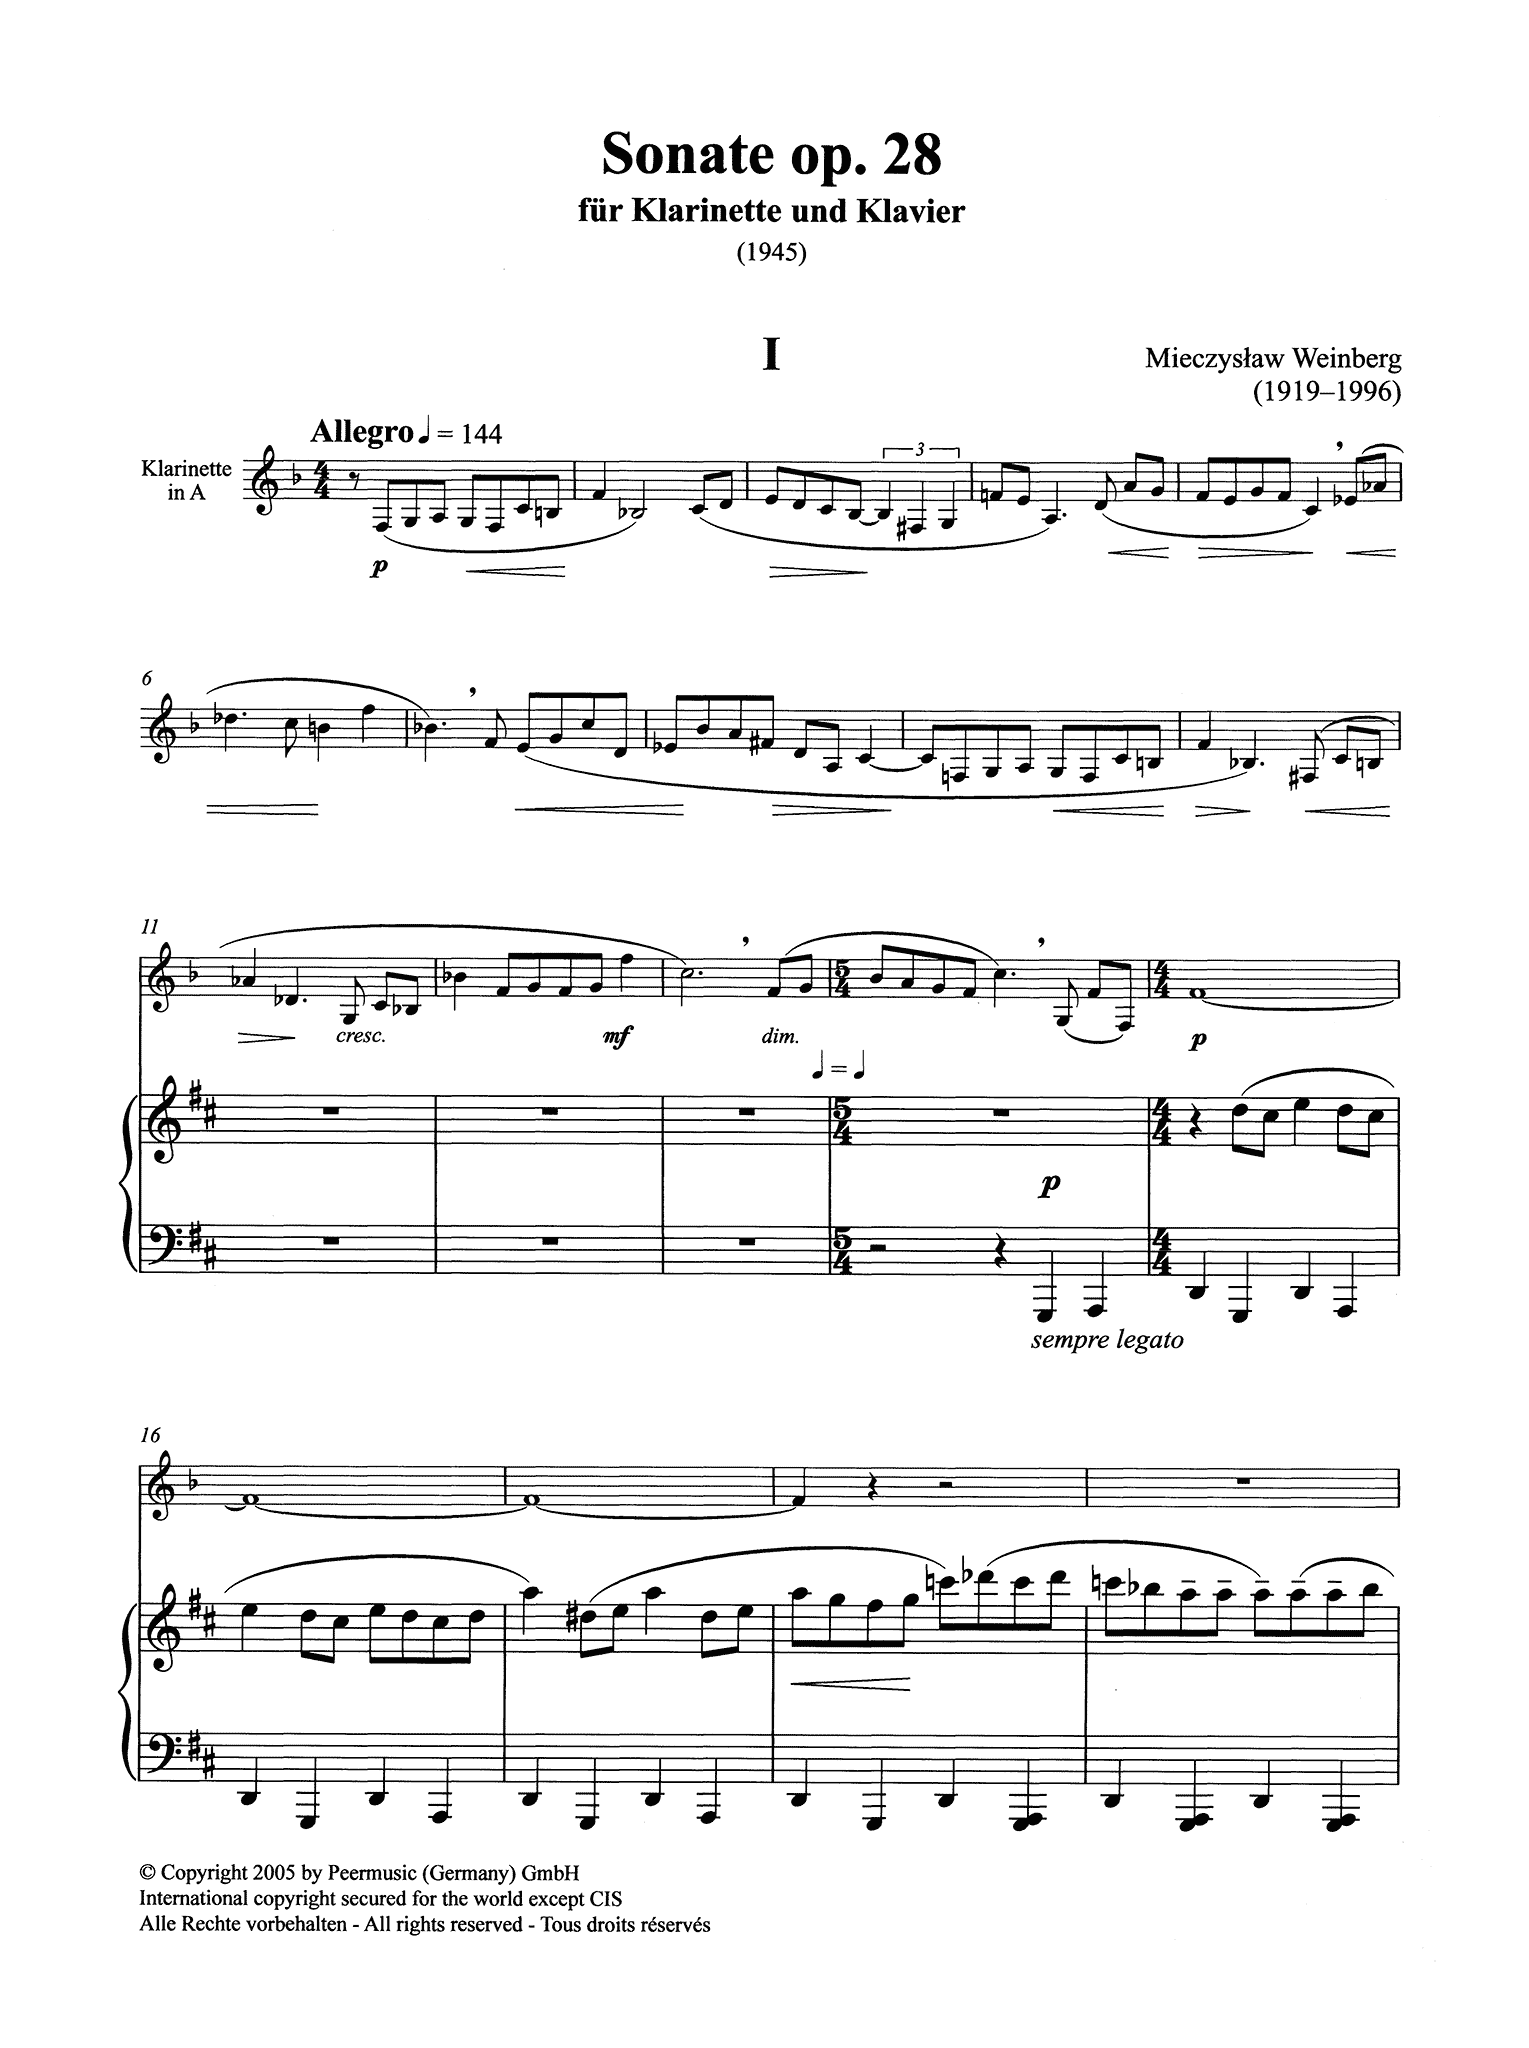 Mieczysław Weinberg Sonata Clarinet & Piano, Op. 28 - Movement 1